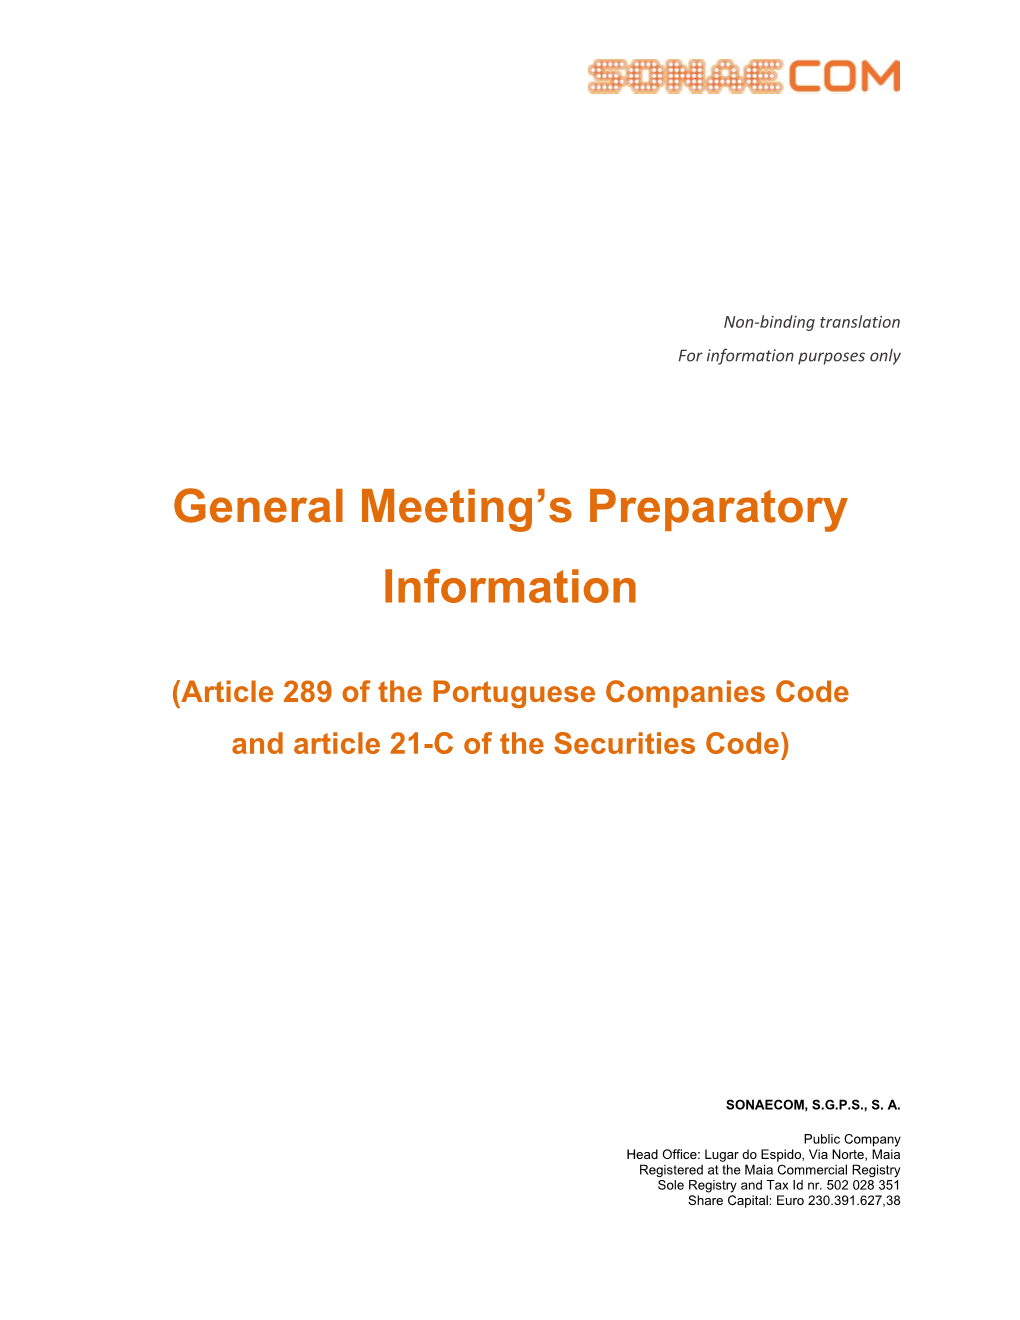 General Meeting's Preparatory Information